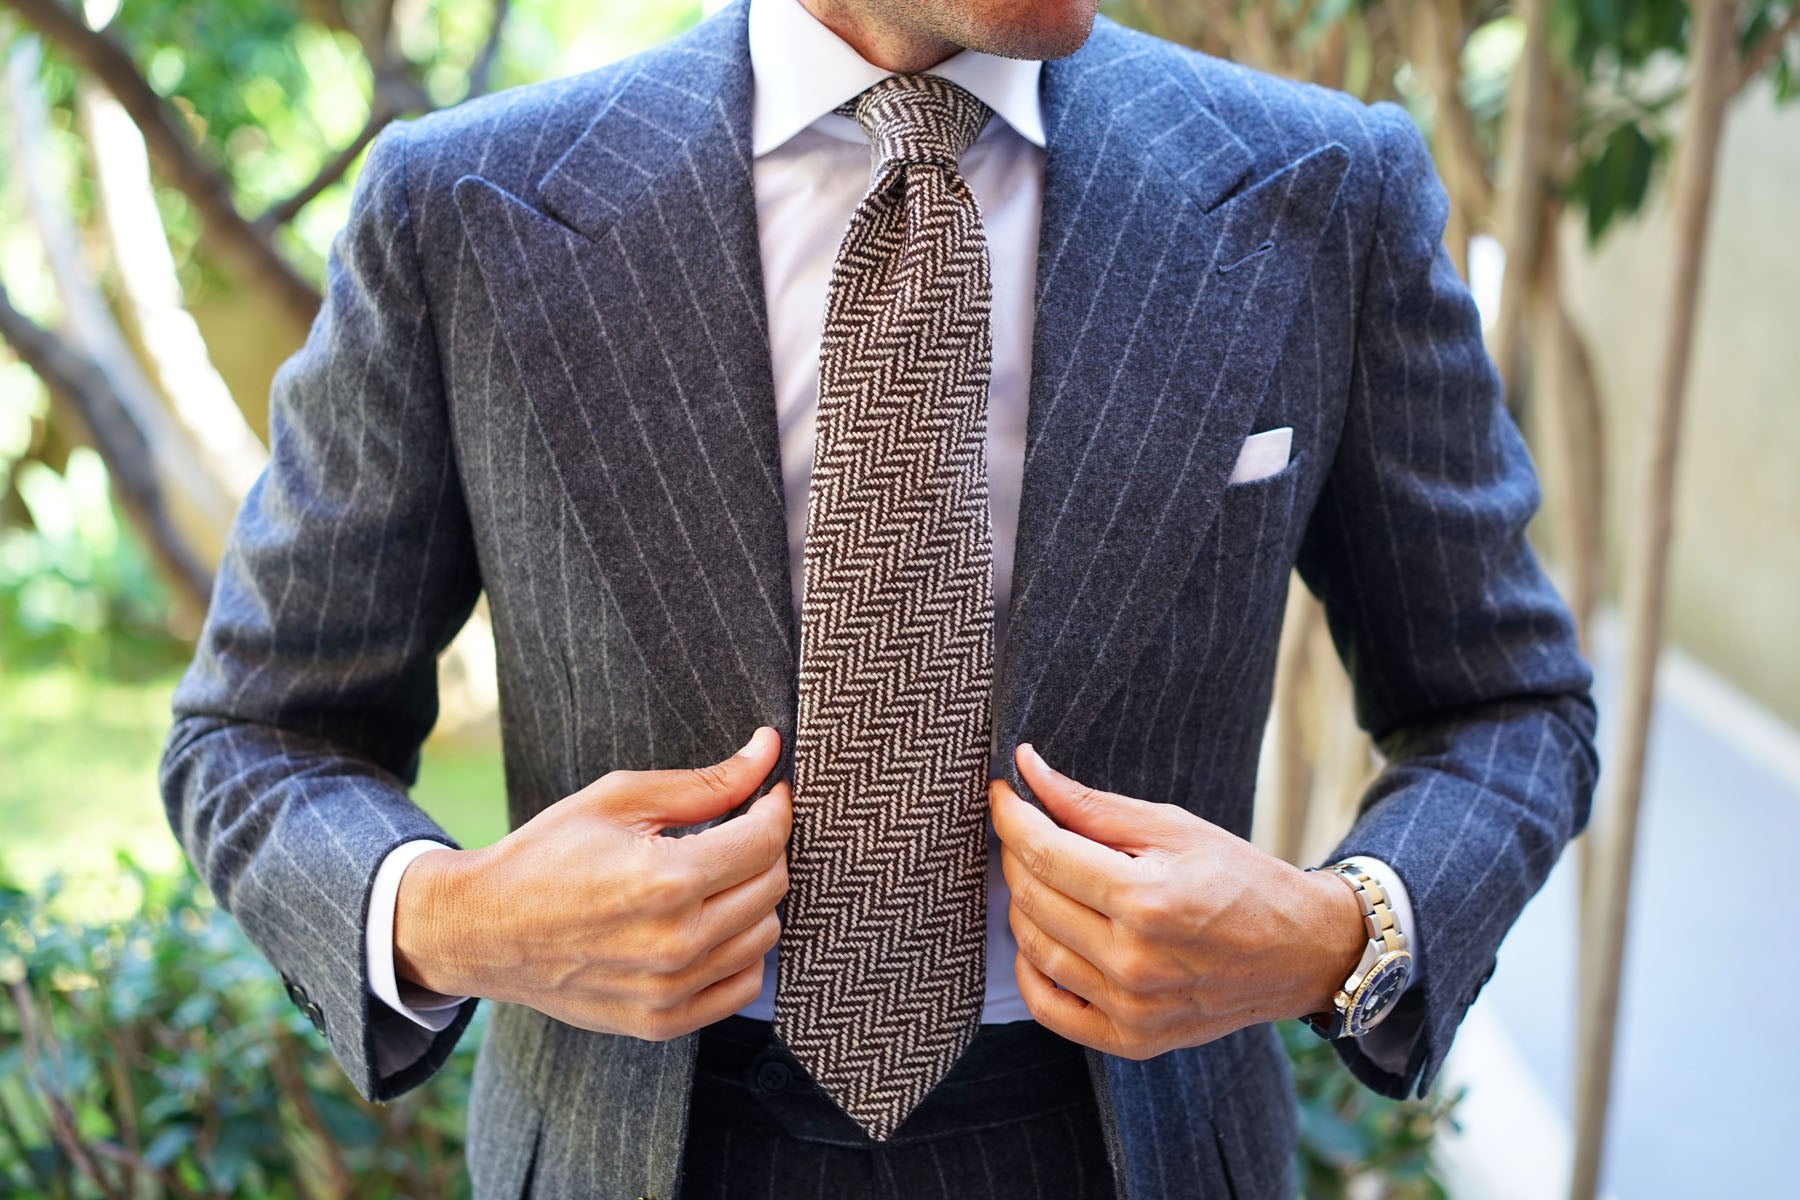 Brown Chevron Wool Tie | Shop Men's Necktie | Best Quality Ties Online ...